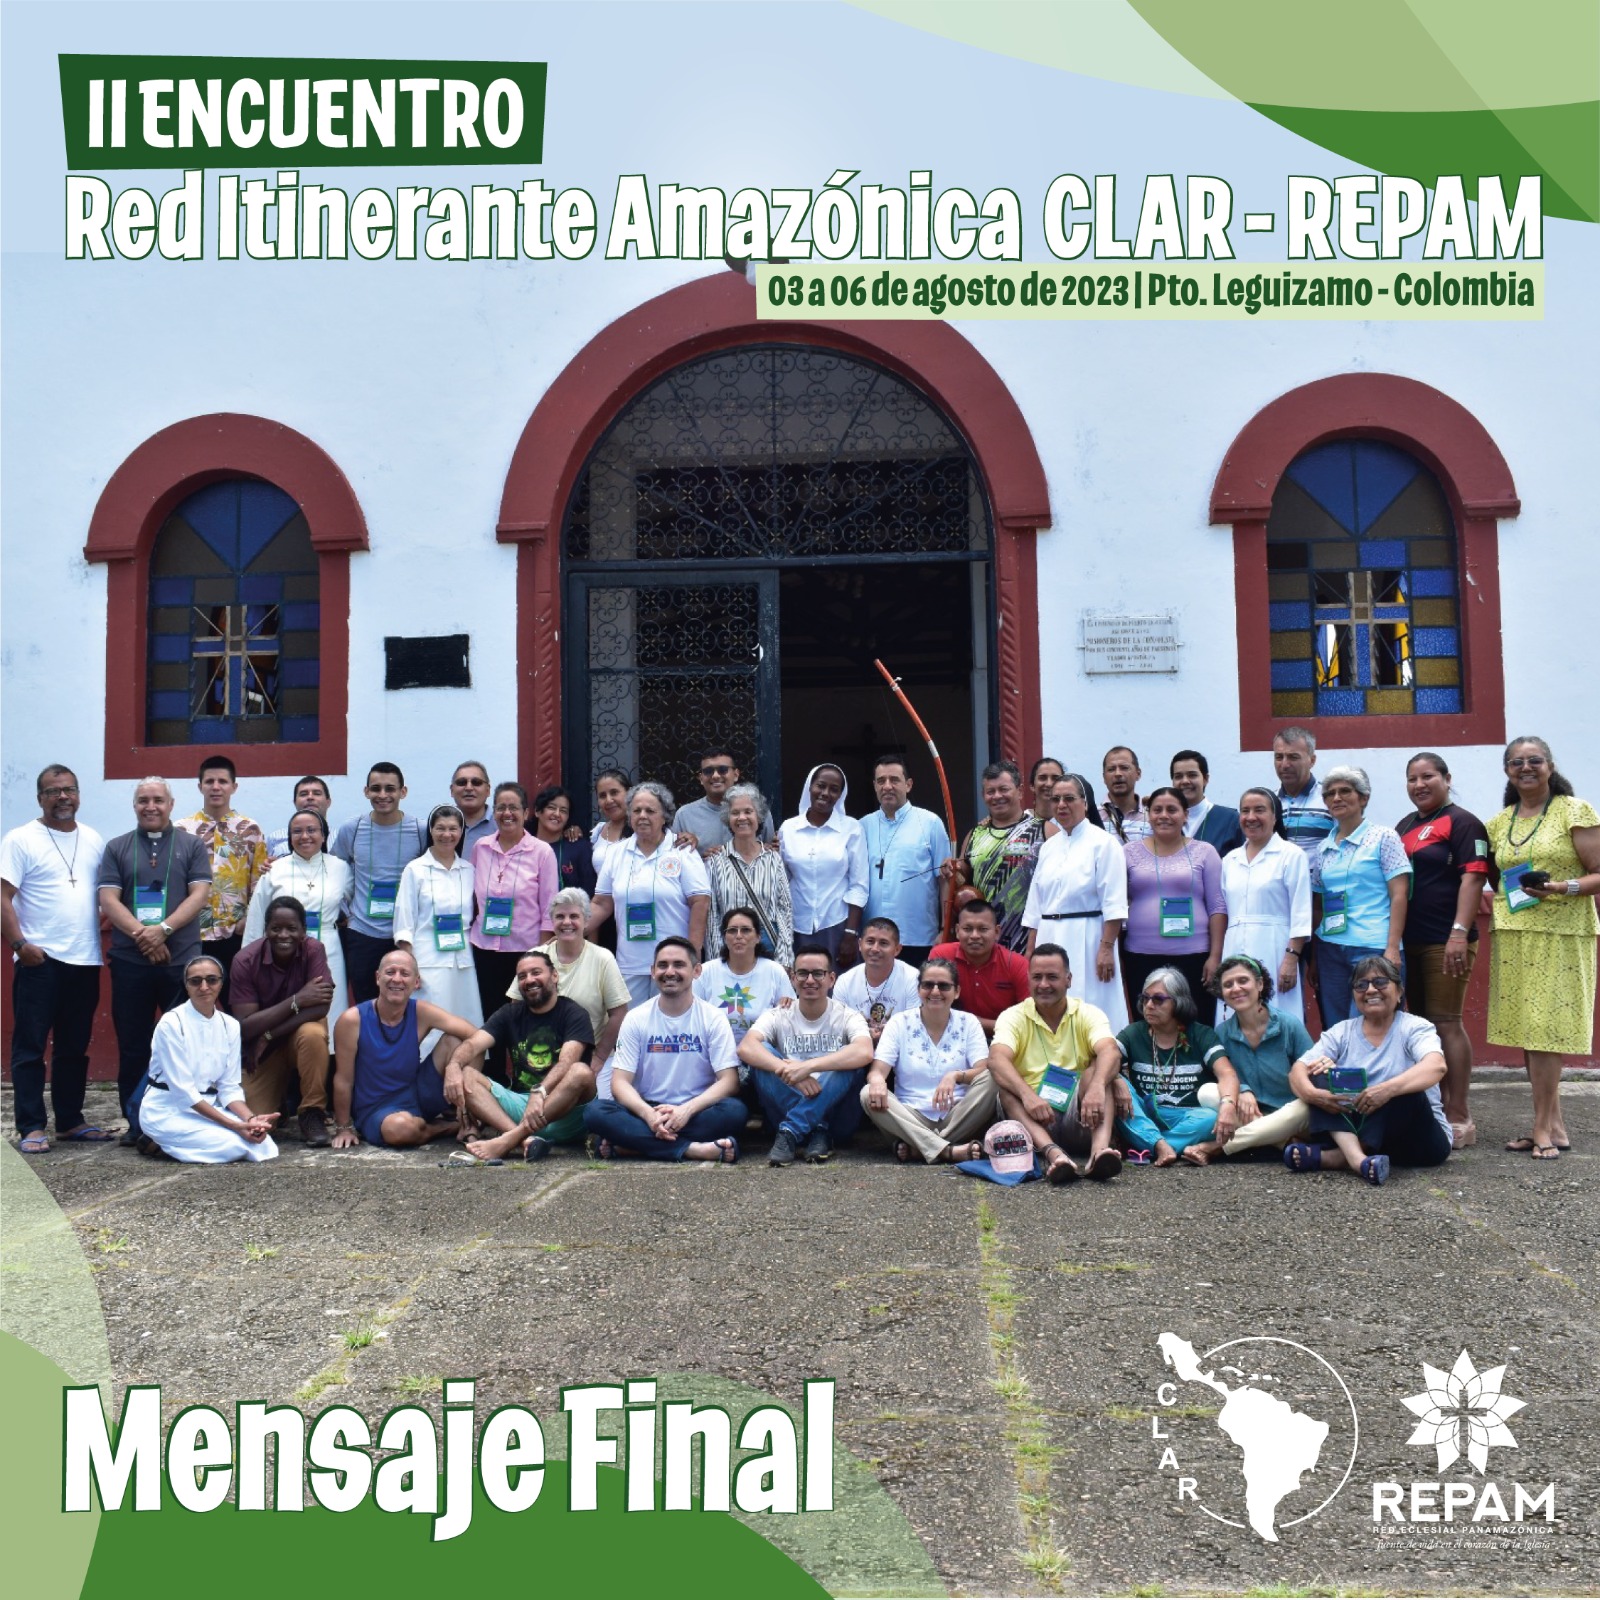 Mensaje Final del II Encuentro de la Red Itinerante Amazónica